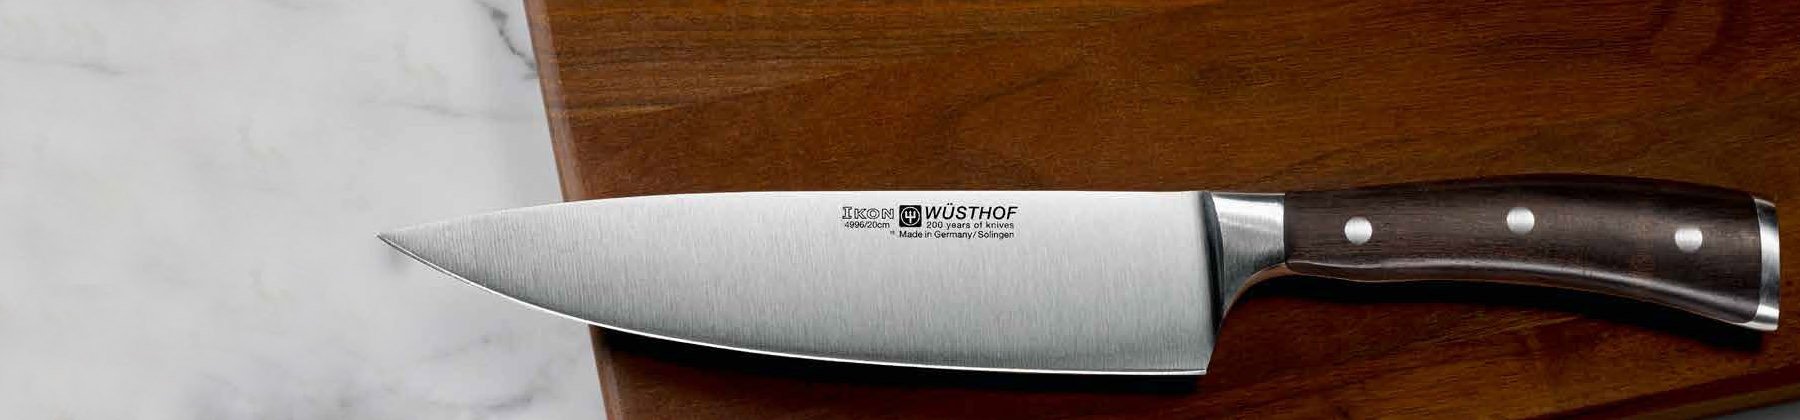 Photo of Wusthof Ikon Blackwood knife.